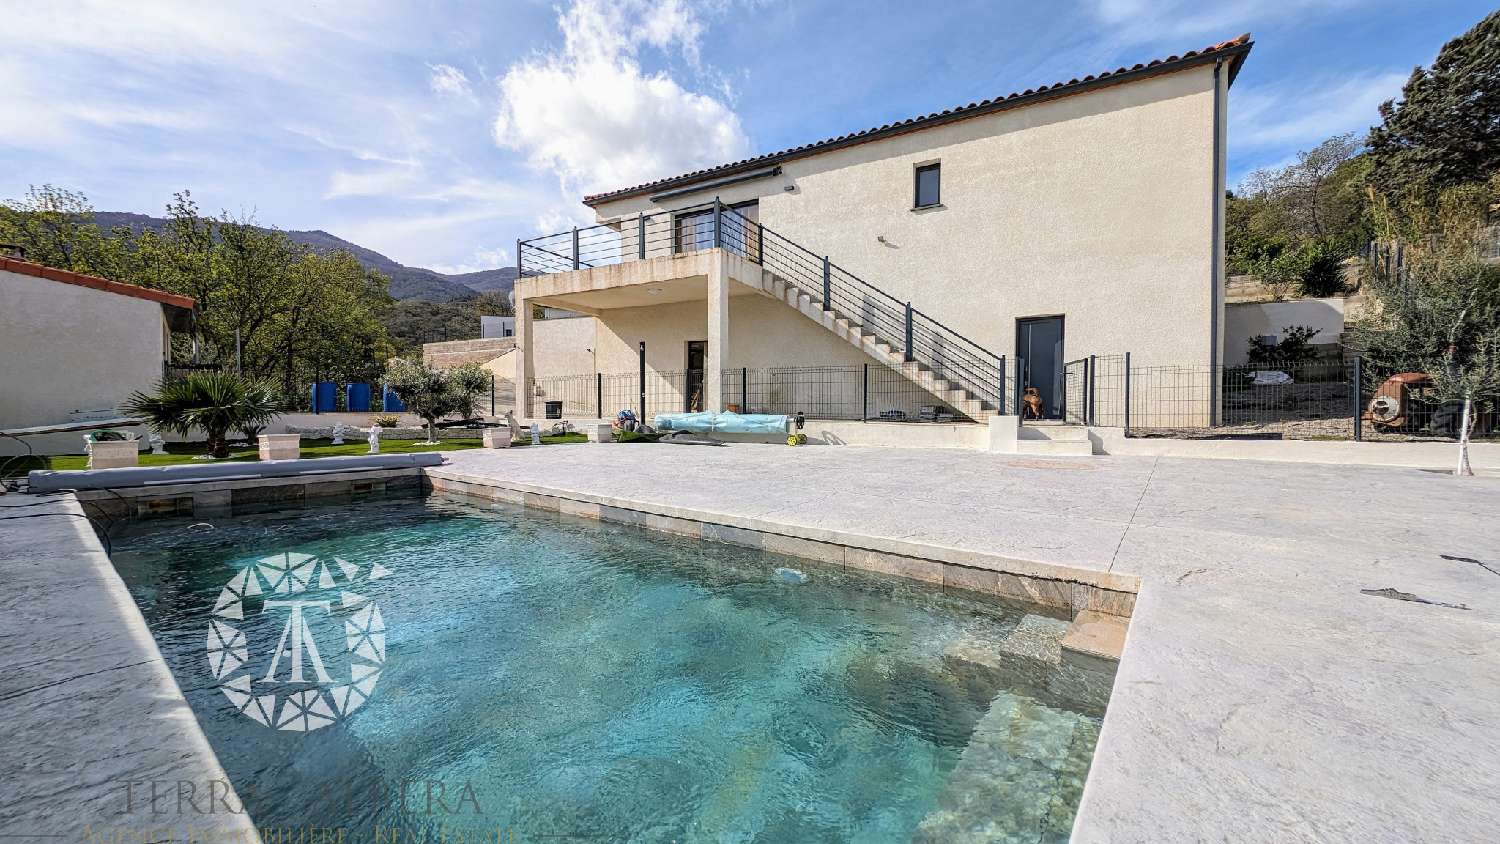  à vendre villa Villelongue-dels-Monts Pyrénées-Orientales 1